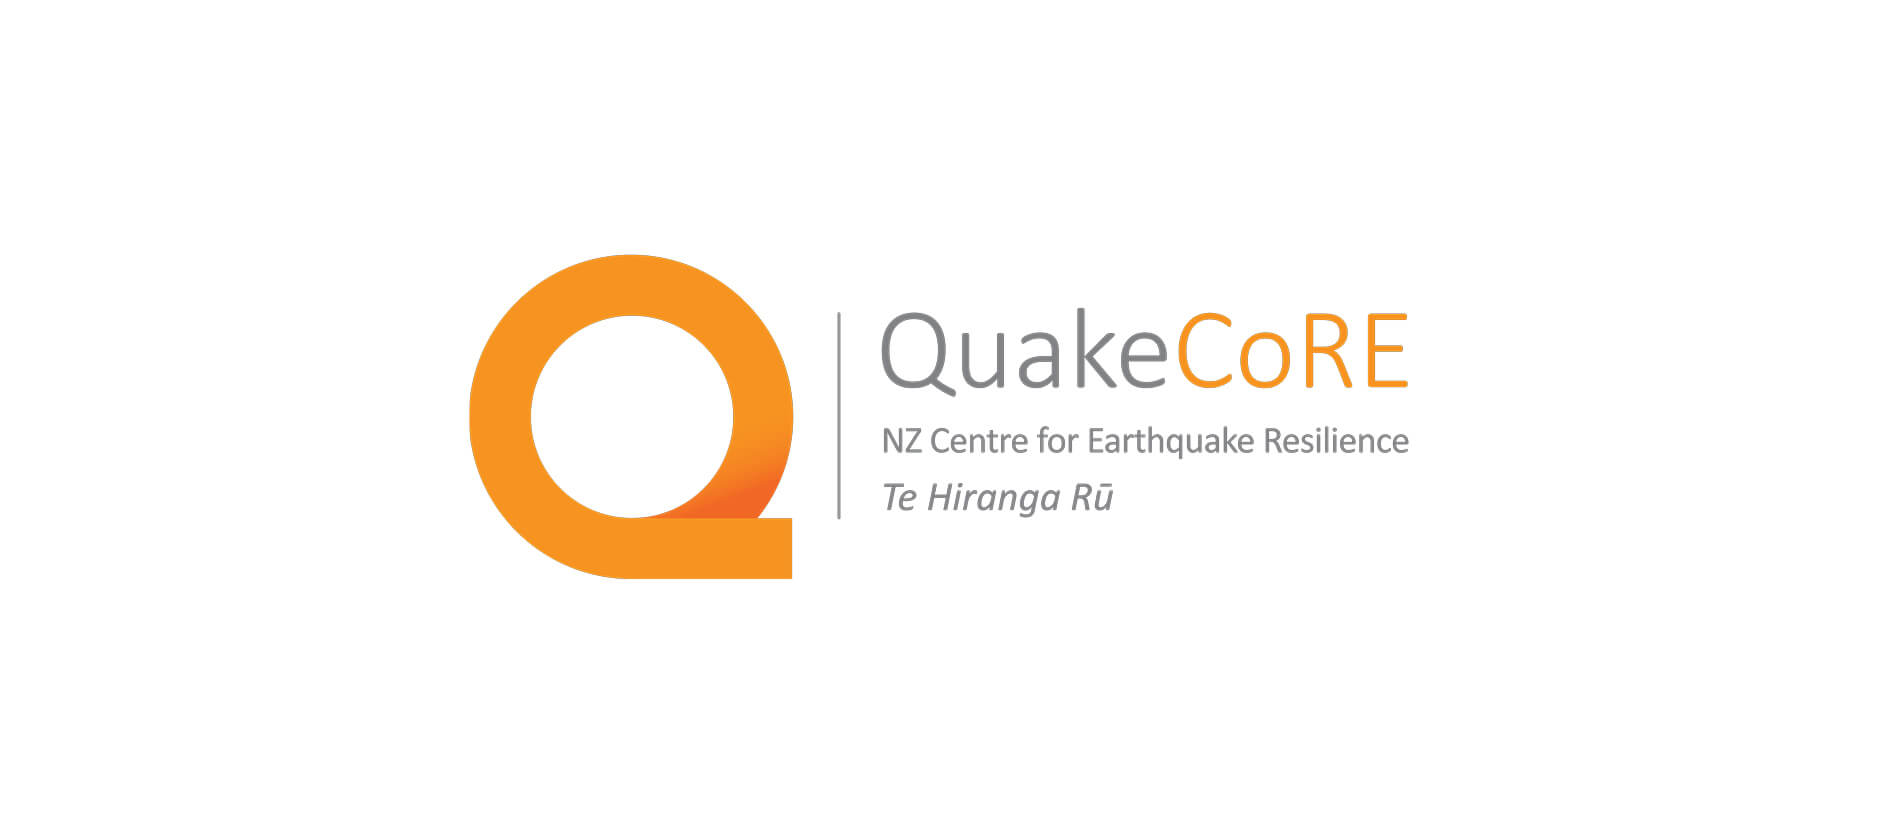 quake core logo